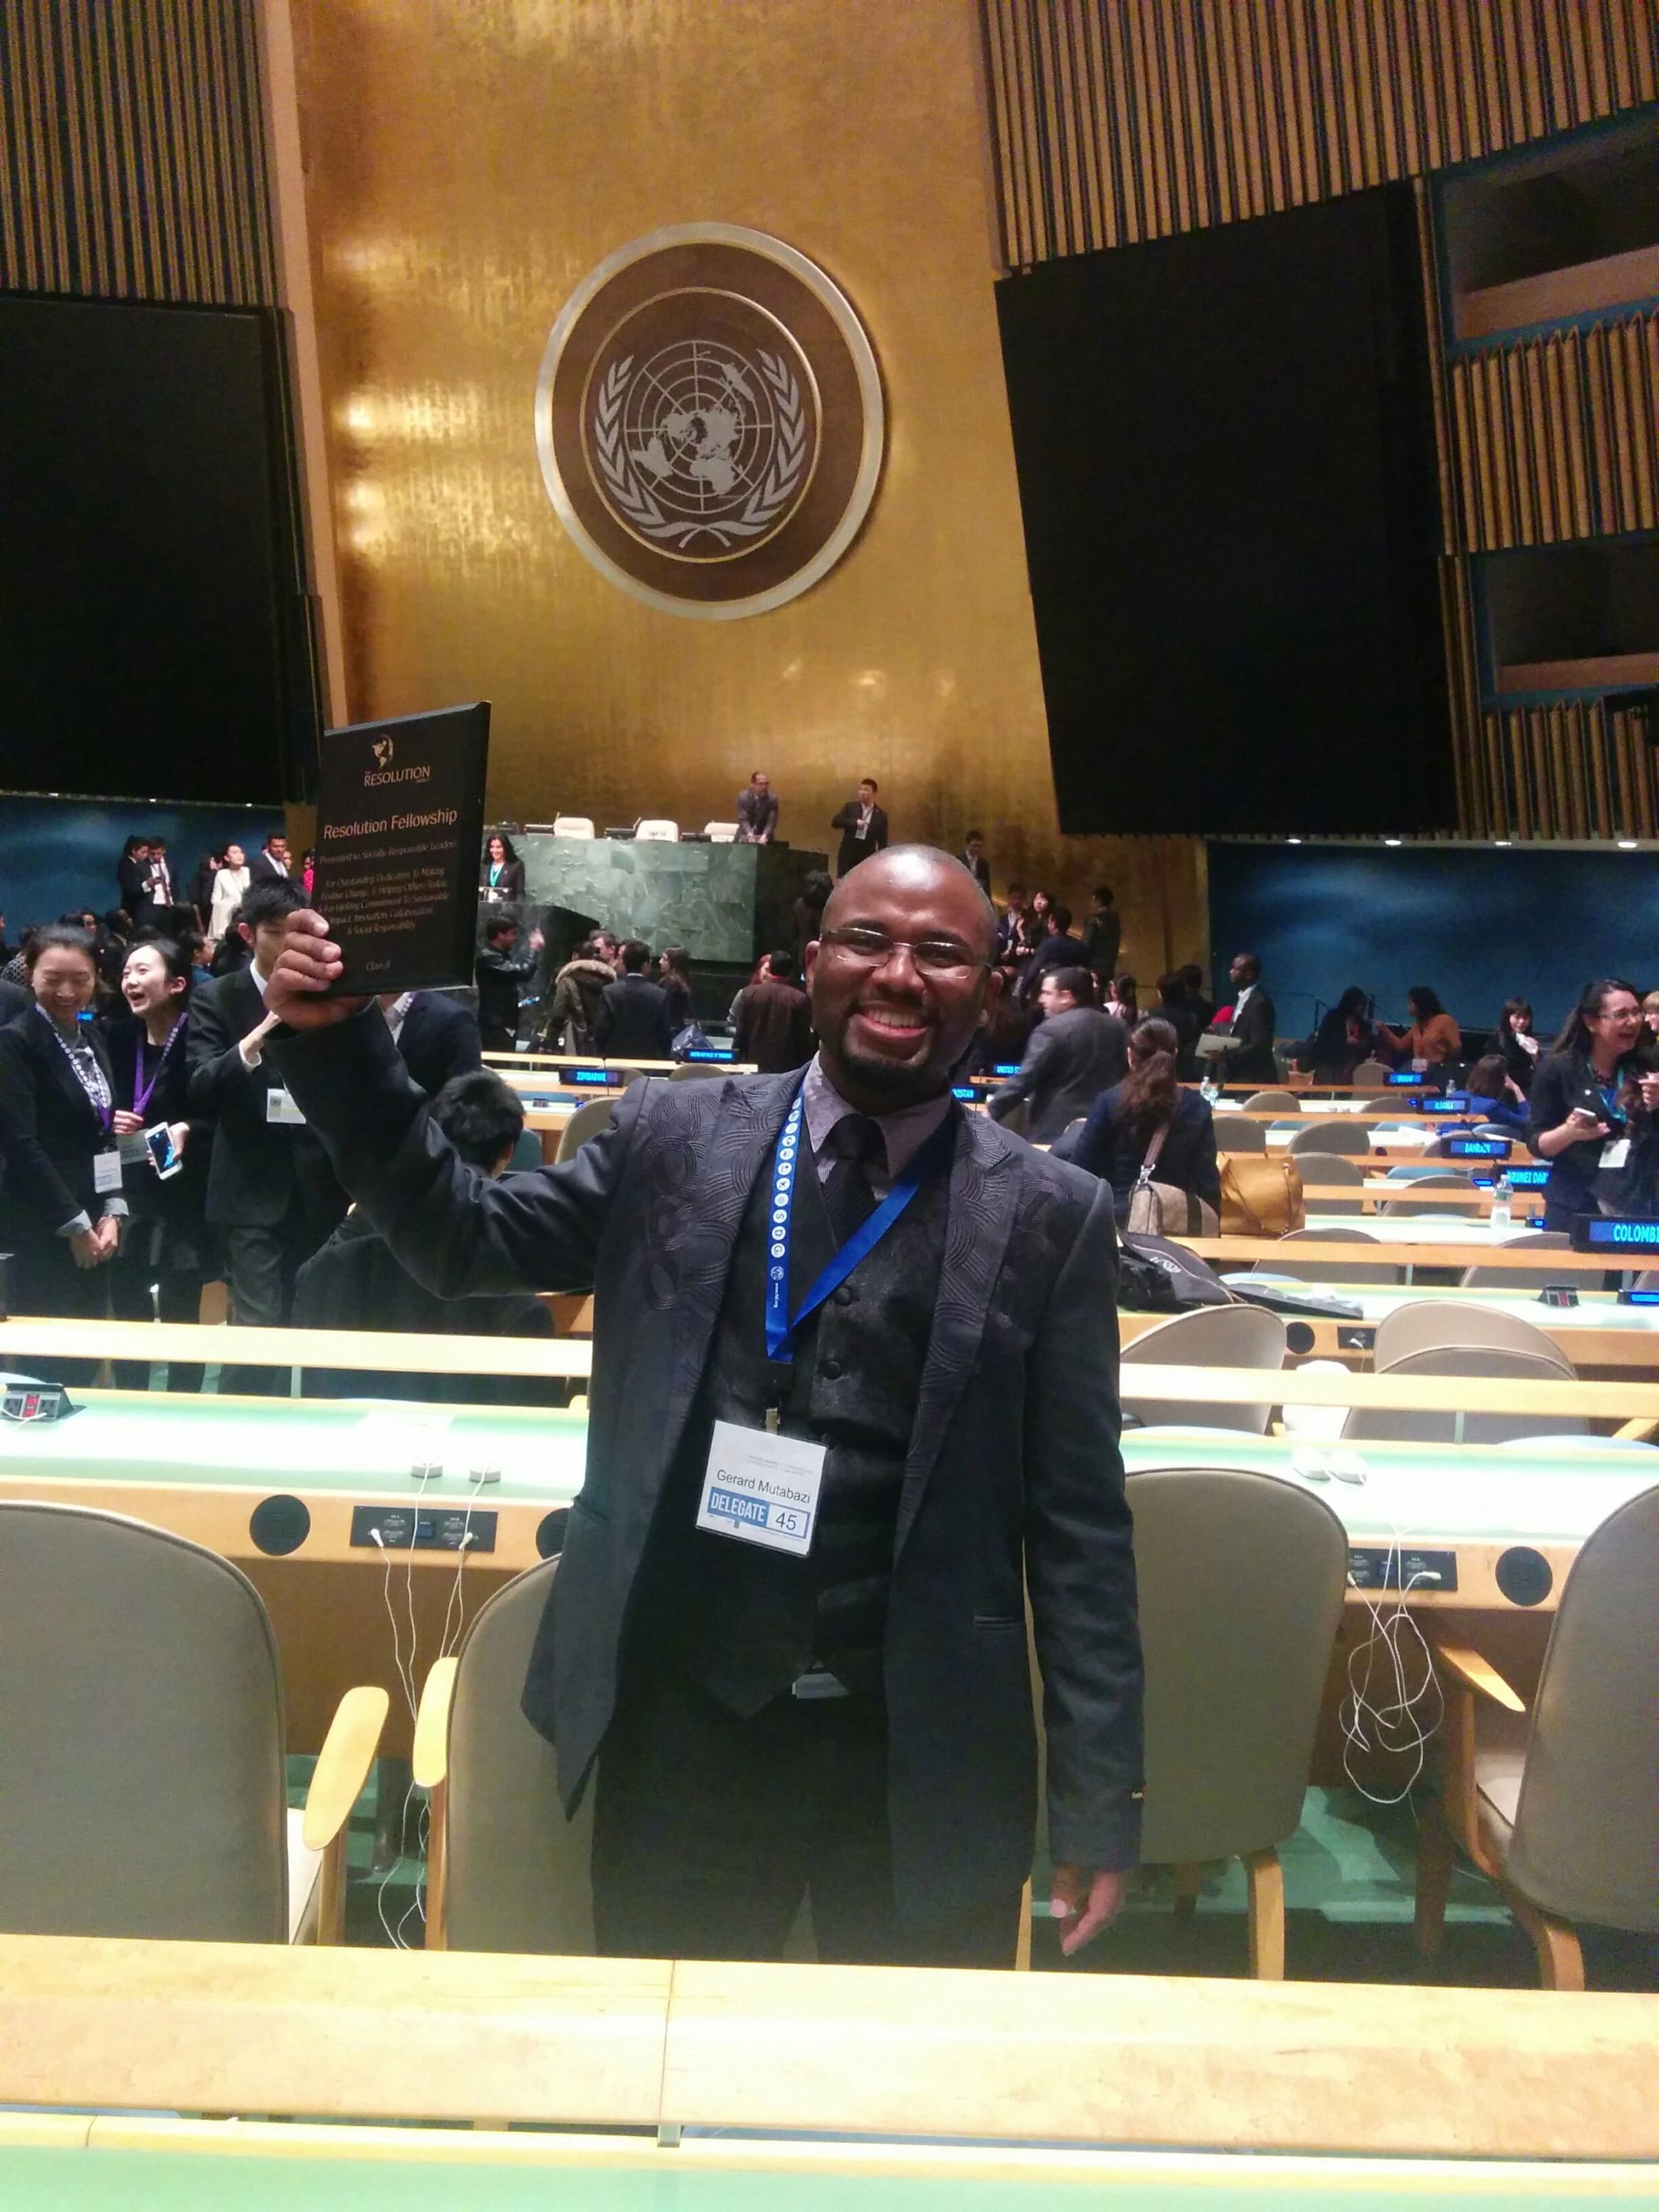 Gerard at the UN